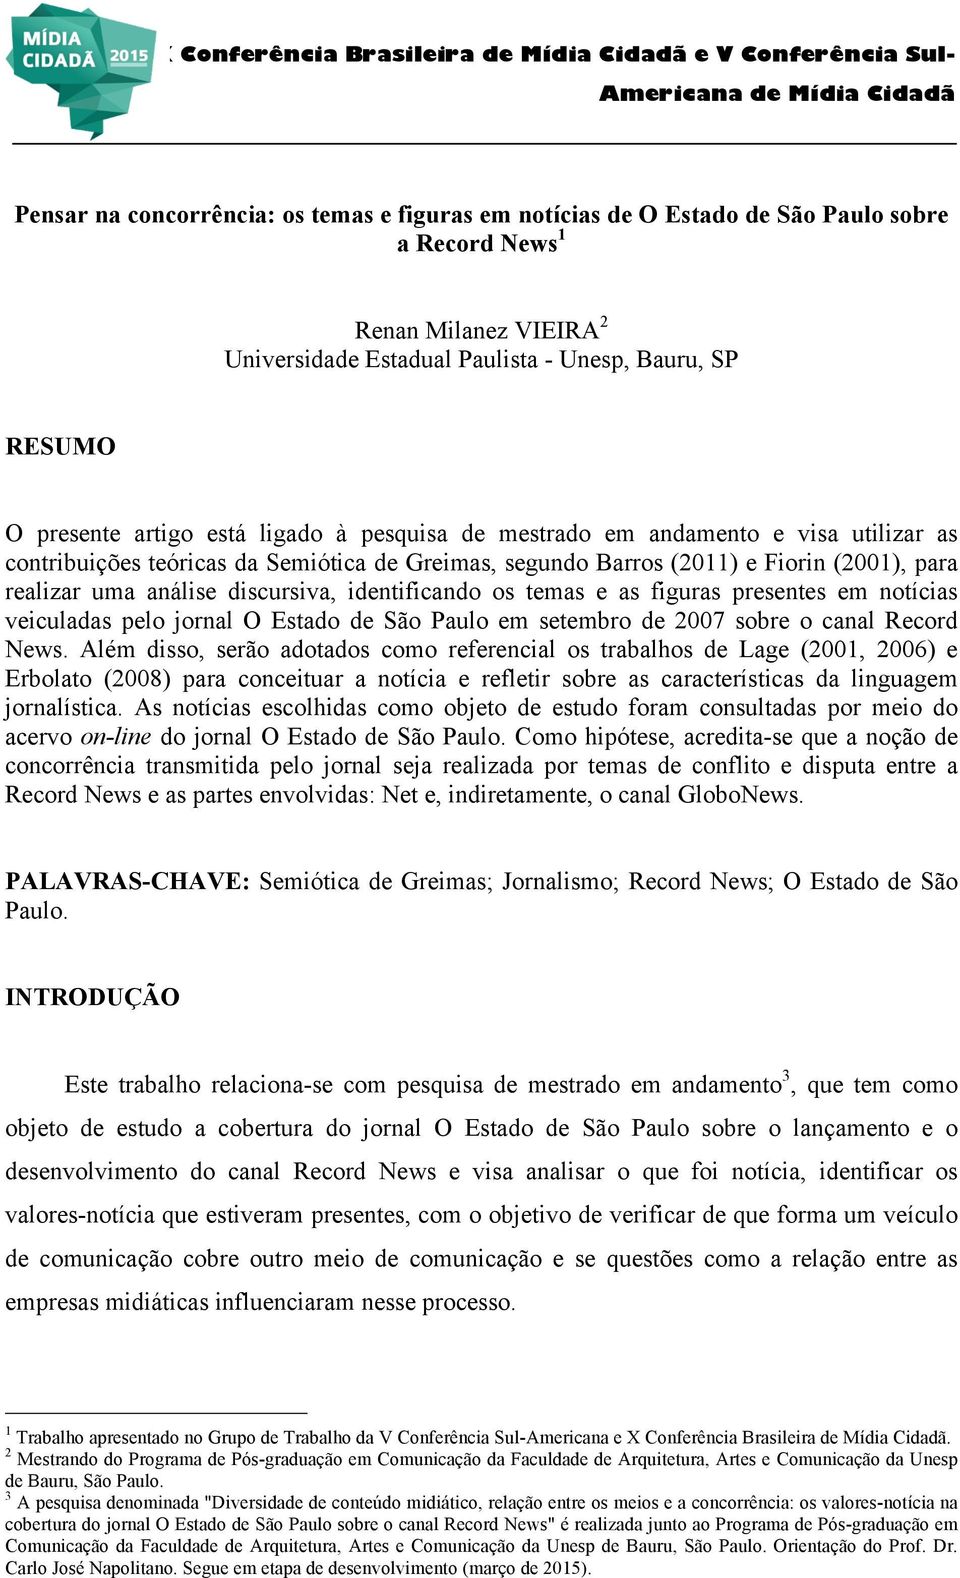 identificando os temas e as figuras presentes em notícias veiculadas pelo jornal O Estado de São Paulo em setembro de 2007 sobre o canal Record News.